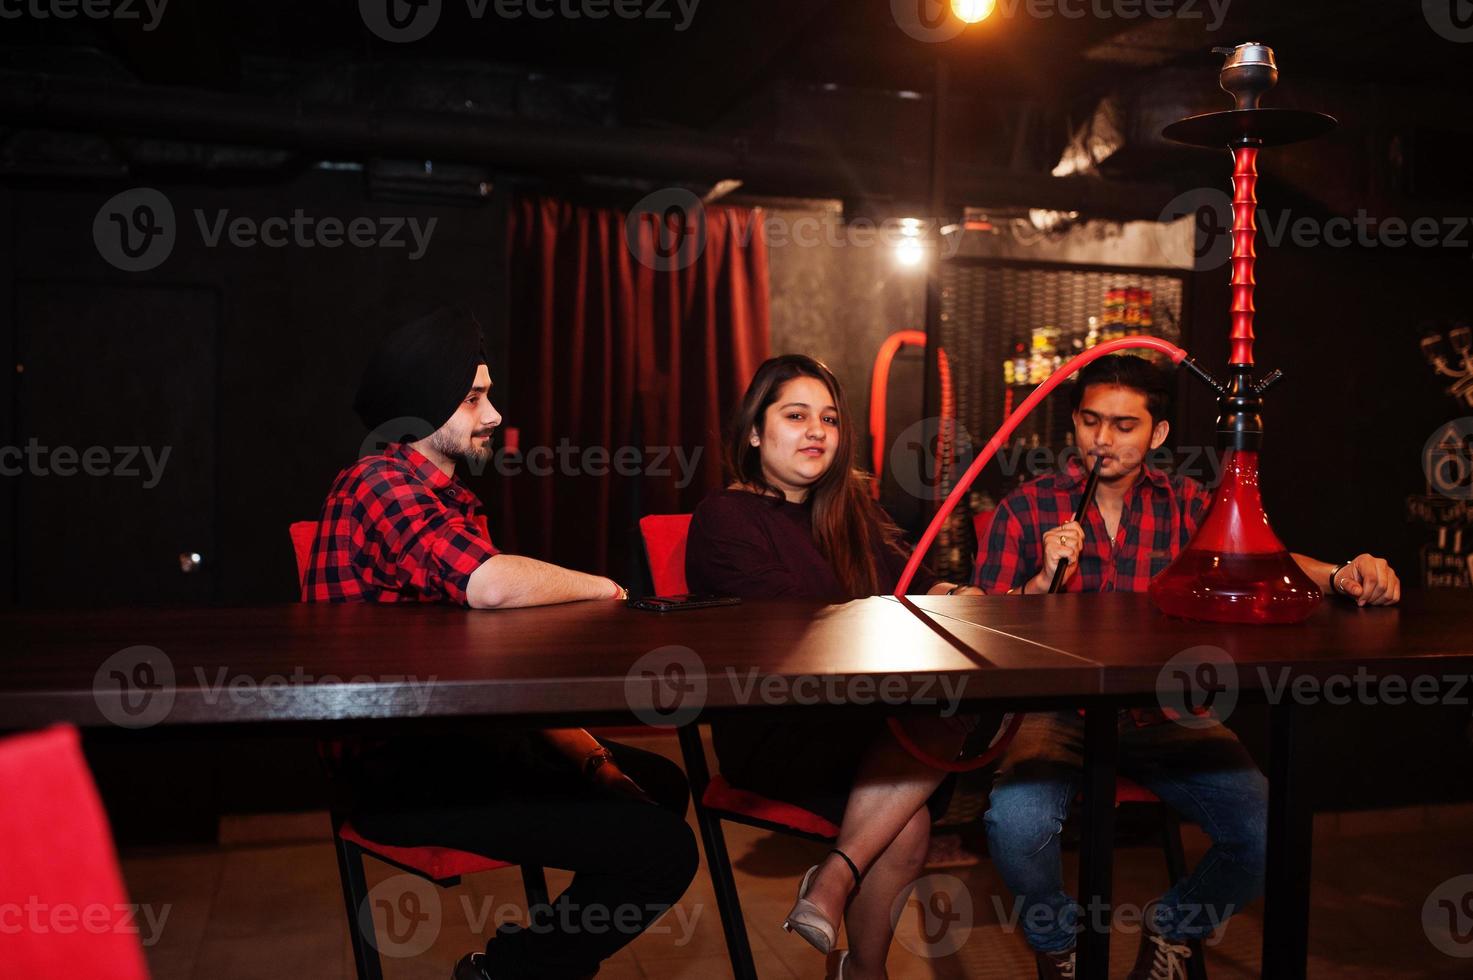 grupo de amigos indios sentados en el lounge bar, fumando narguile y descansando. foto